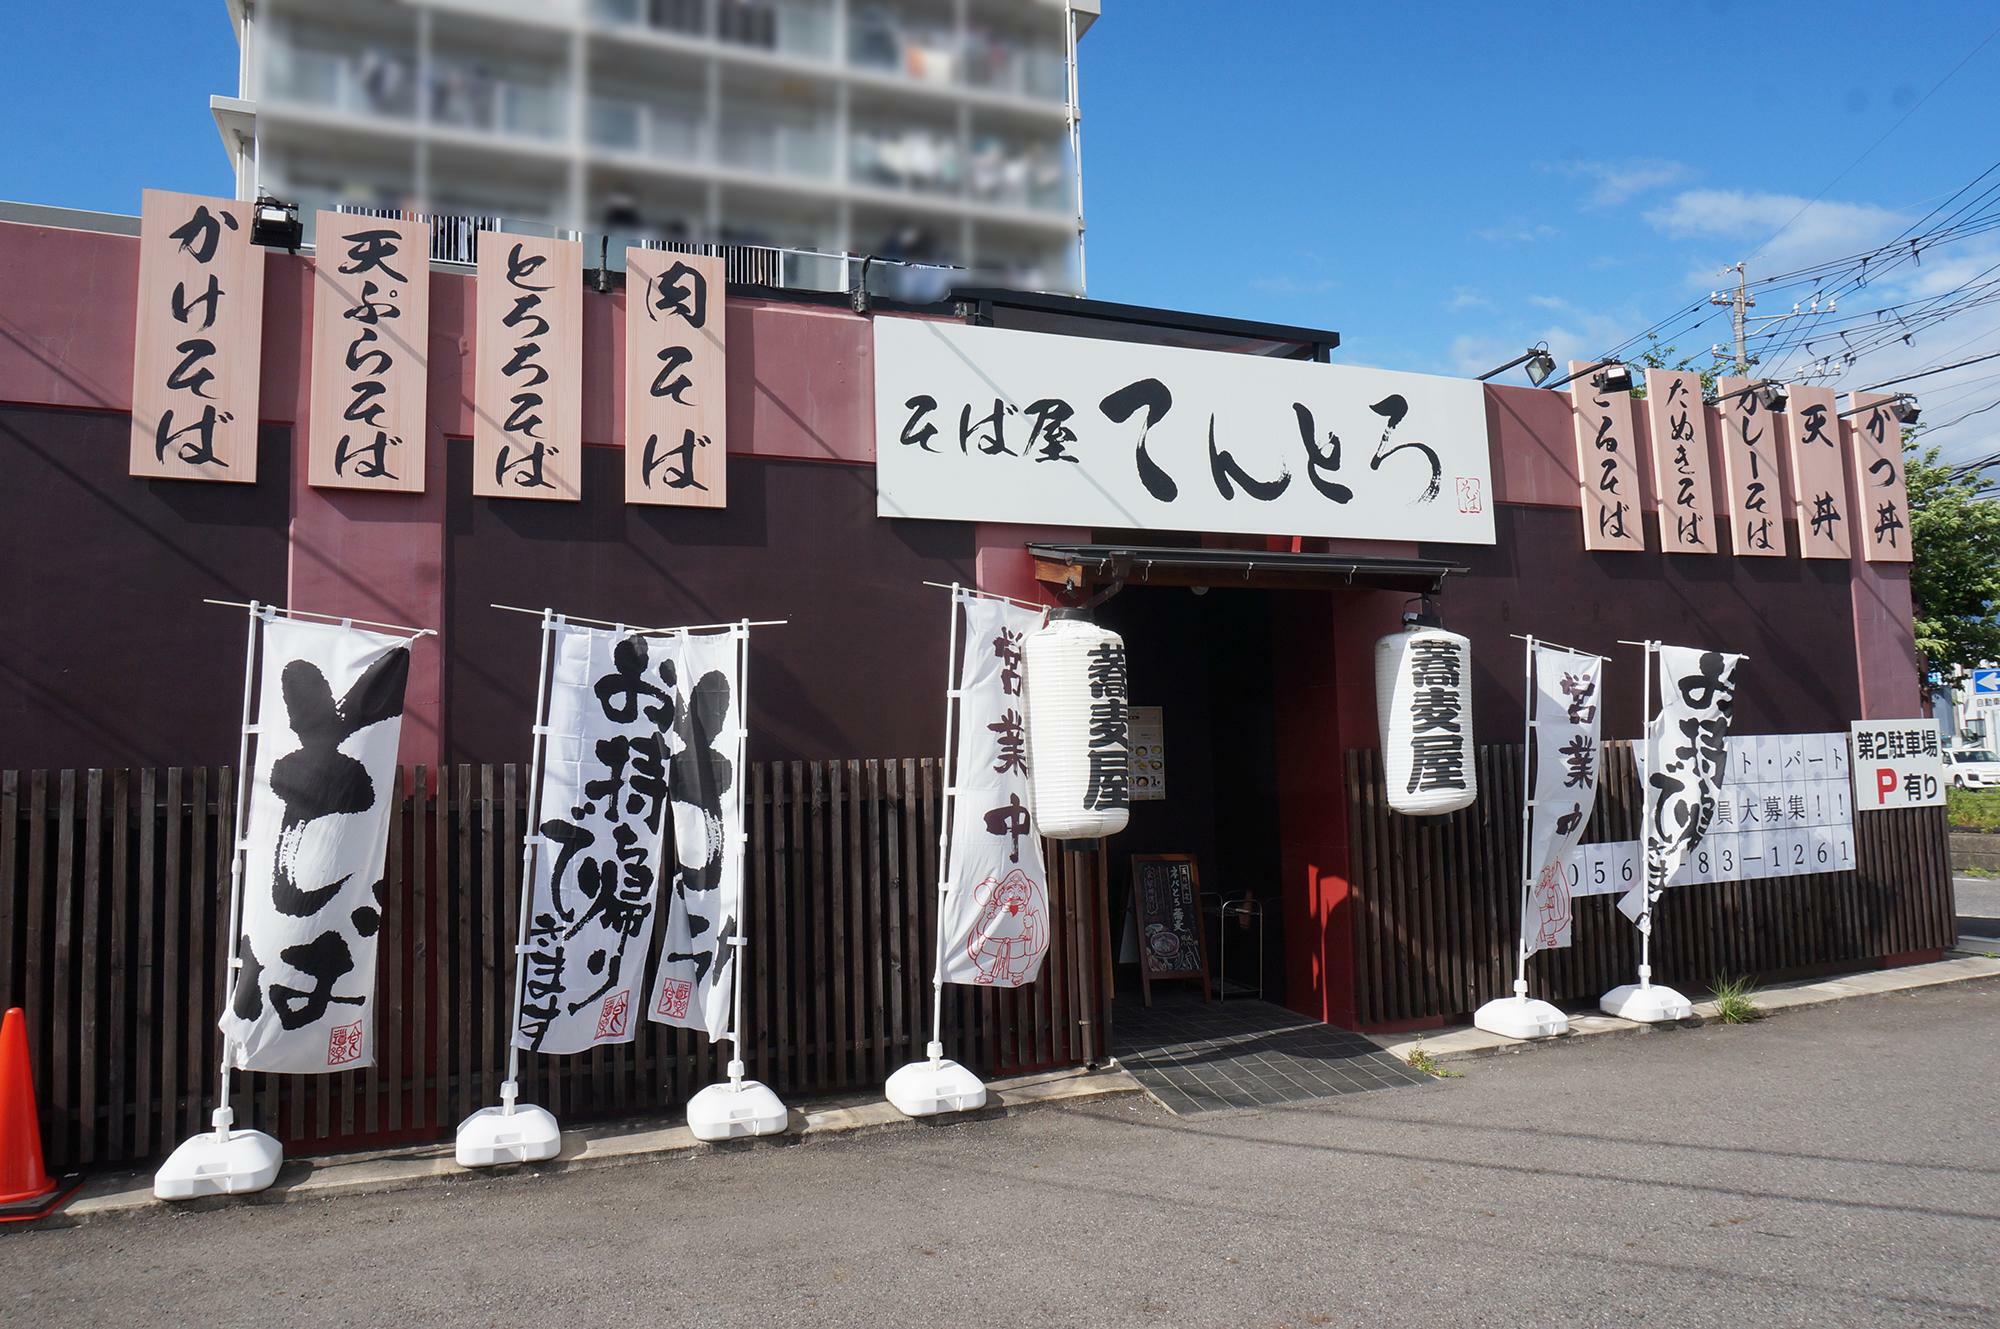 そば屋てんとろ春日井店。店名の由来は「天ぷら」と「とろろ」で「てんとろ」です。